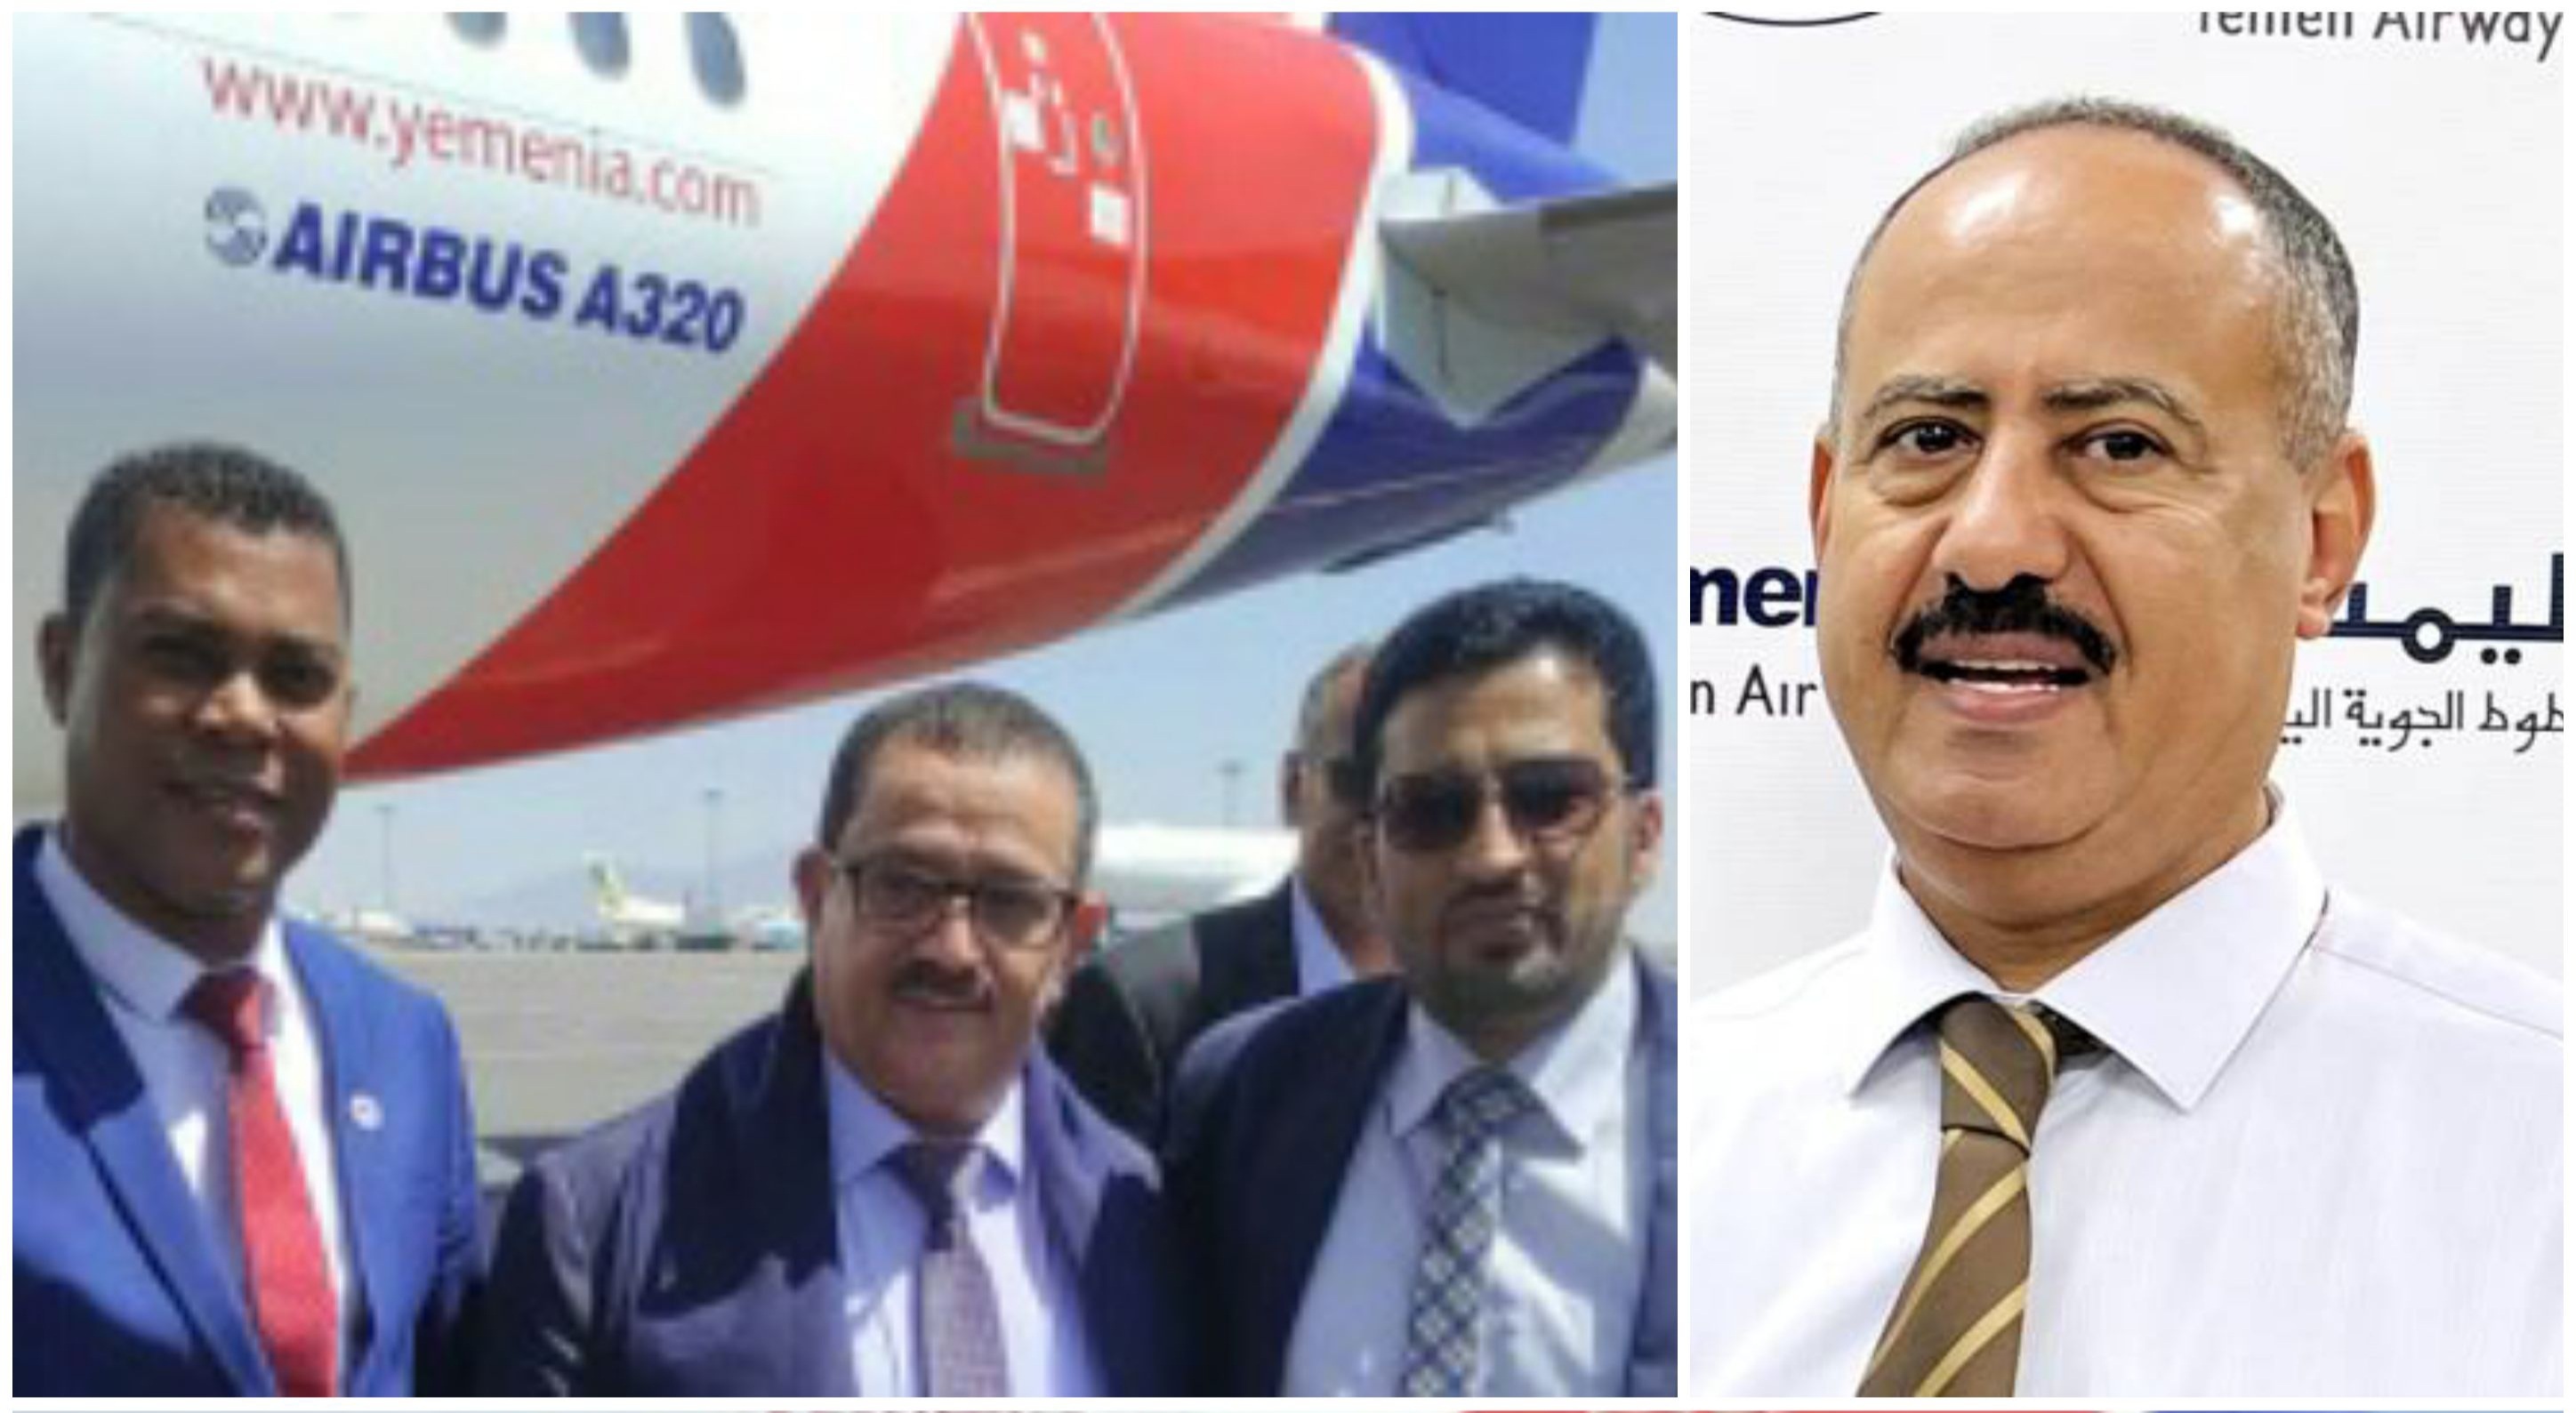 بشرى سارة للمسافرين .. الخطوط الجوية اليمنية تعلن التوقيع على إتفاقية جديدة لتسيير رحلات الى سقطرى ..!!